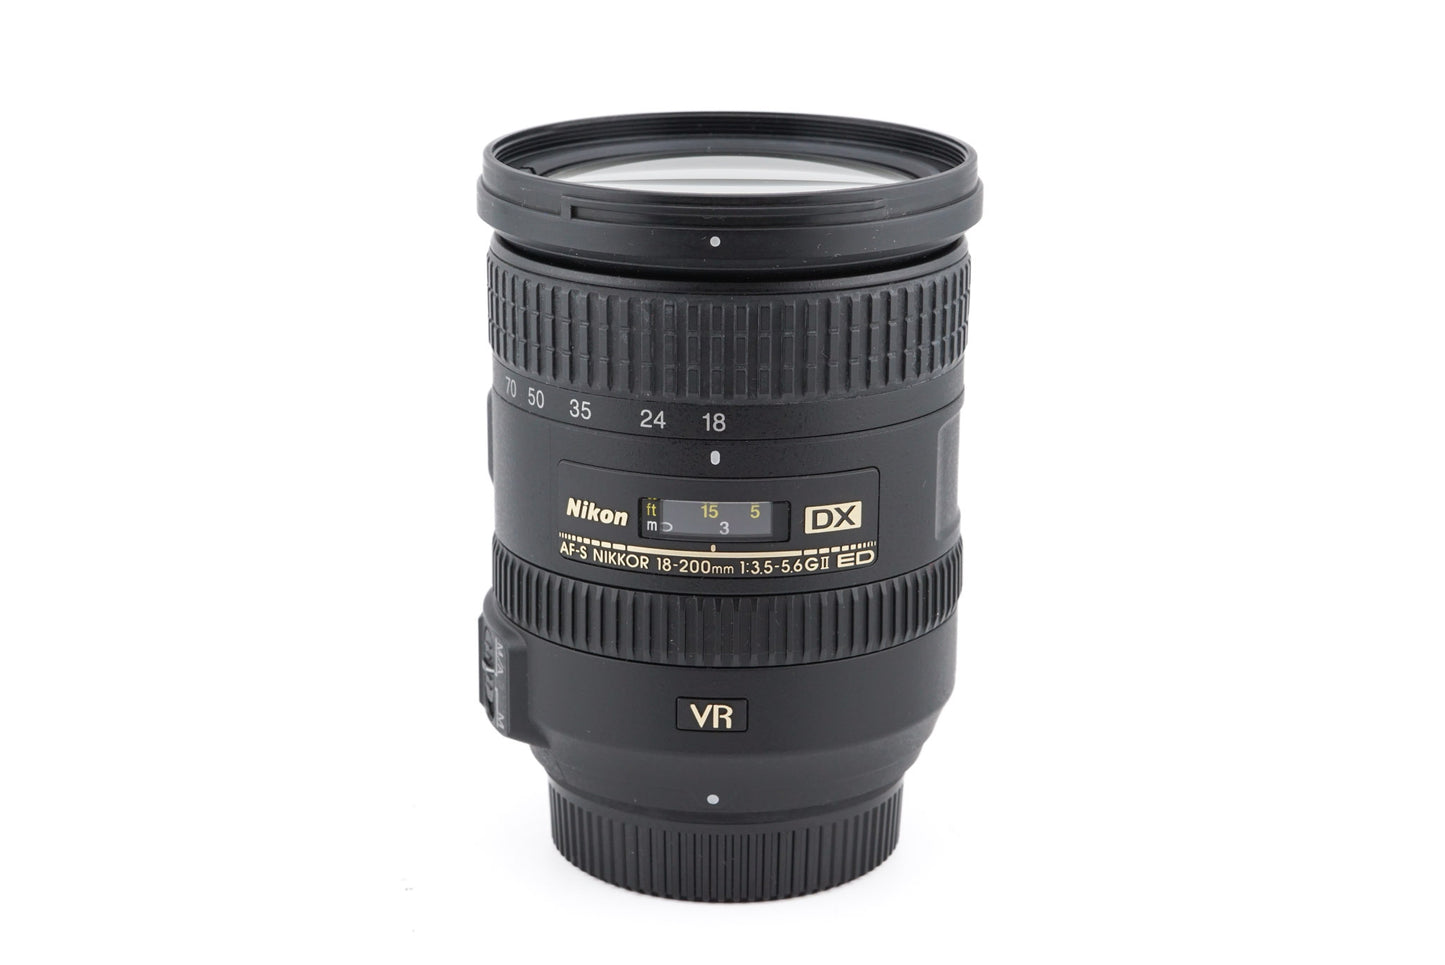 Nikon 18-200mm f3.5-5.6 AF-S Nikkor G ED VR II - Lens